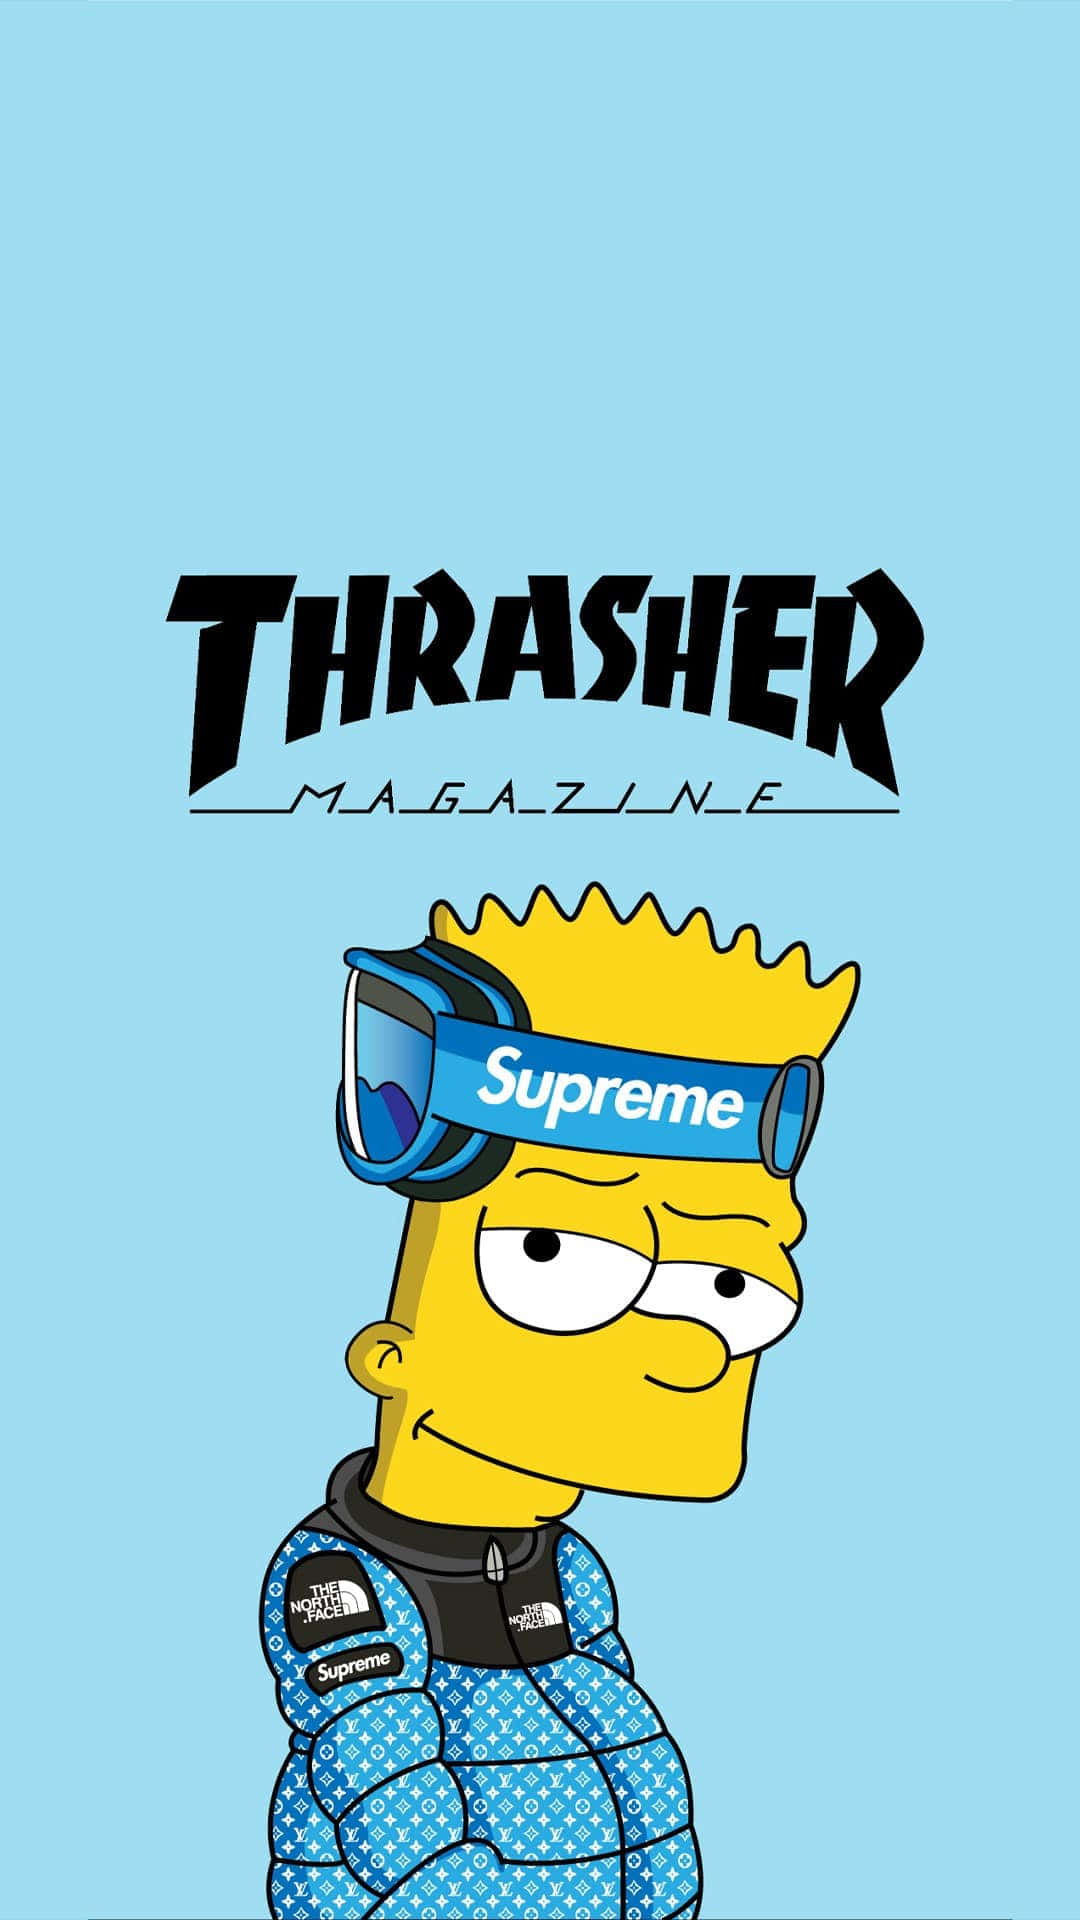 Thrashermagazin - Thrasher-magazin - Thrasher-magazin - Thrasher-magazin - Thrasher Wallpaper